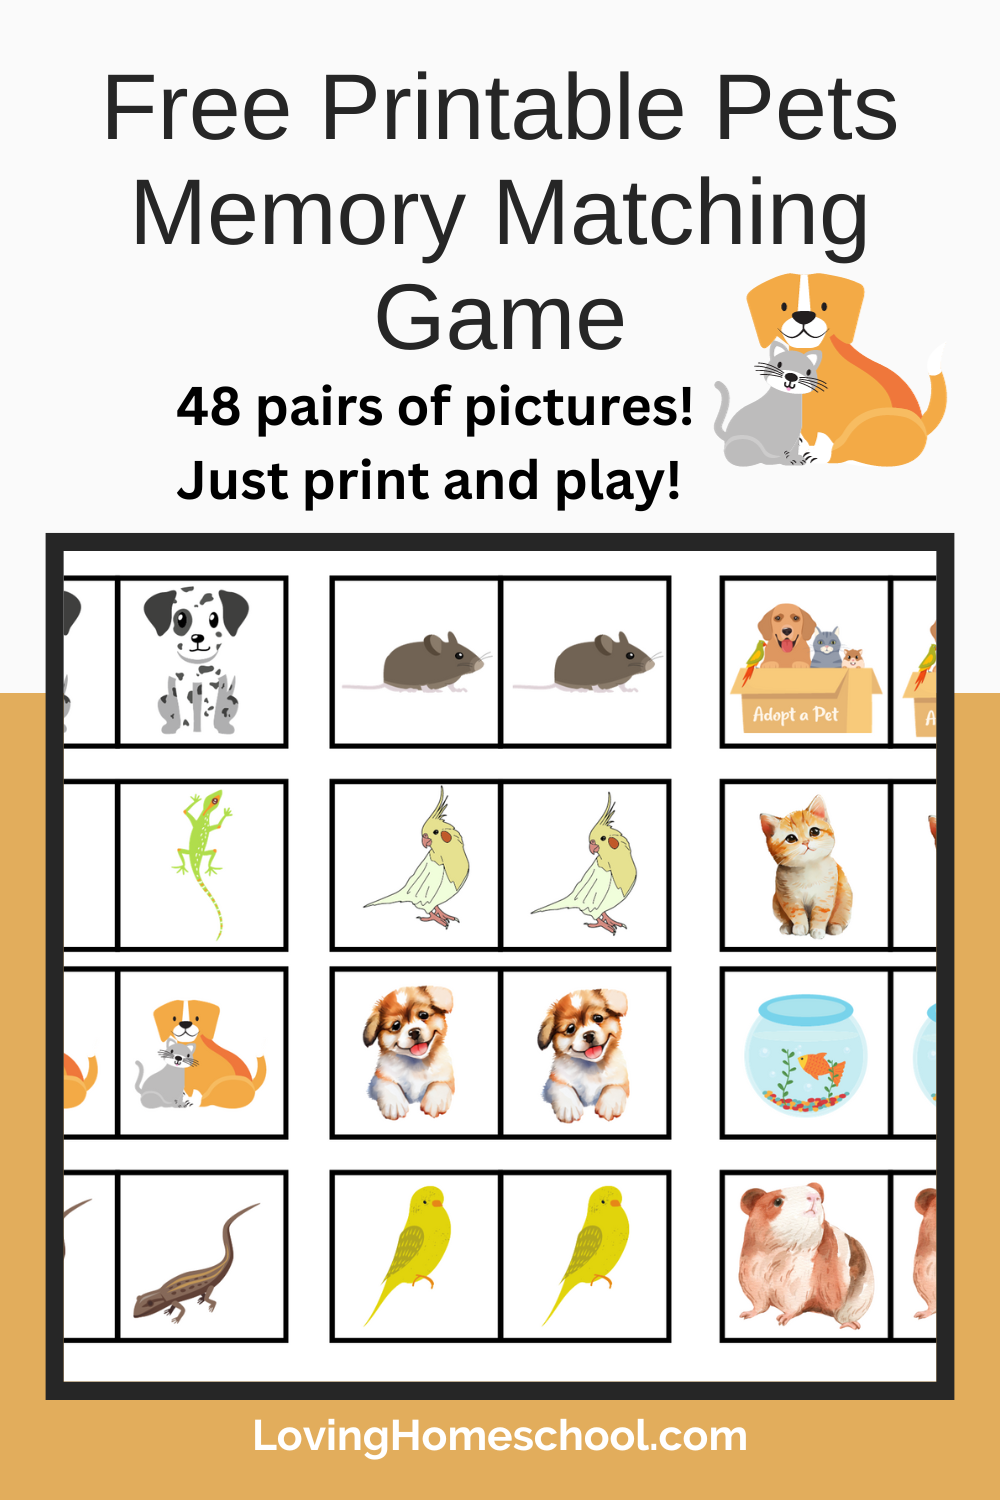 Free Printable Pets Memory Matching Game Pinterest Pin